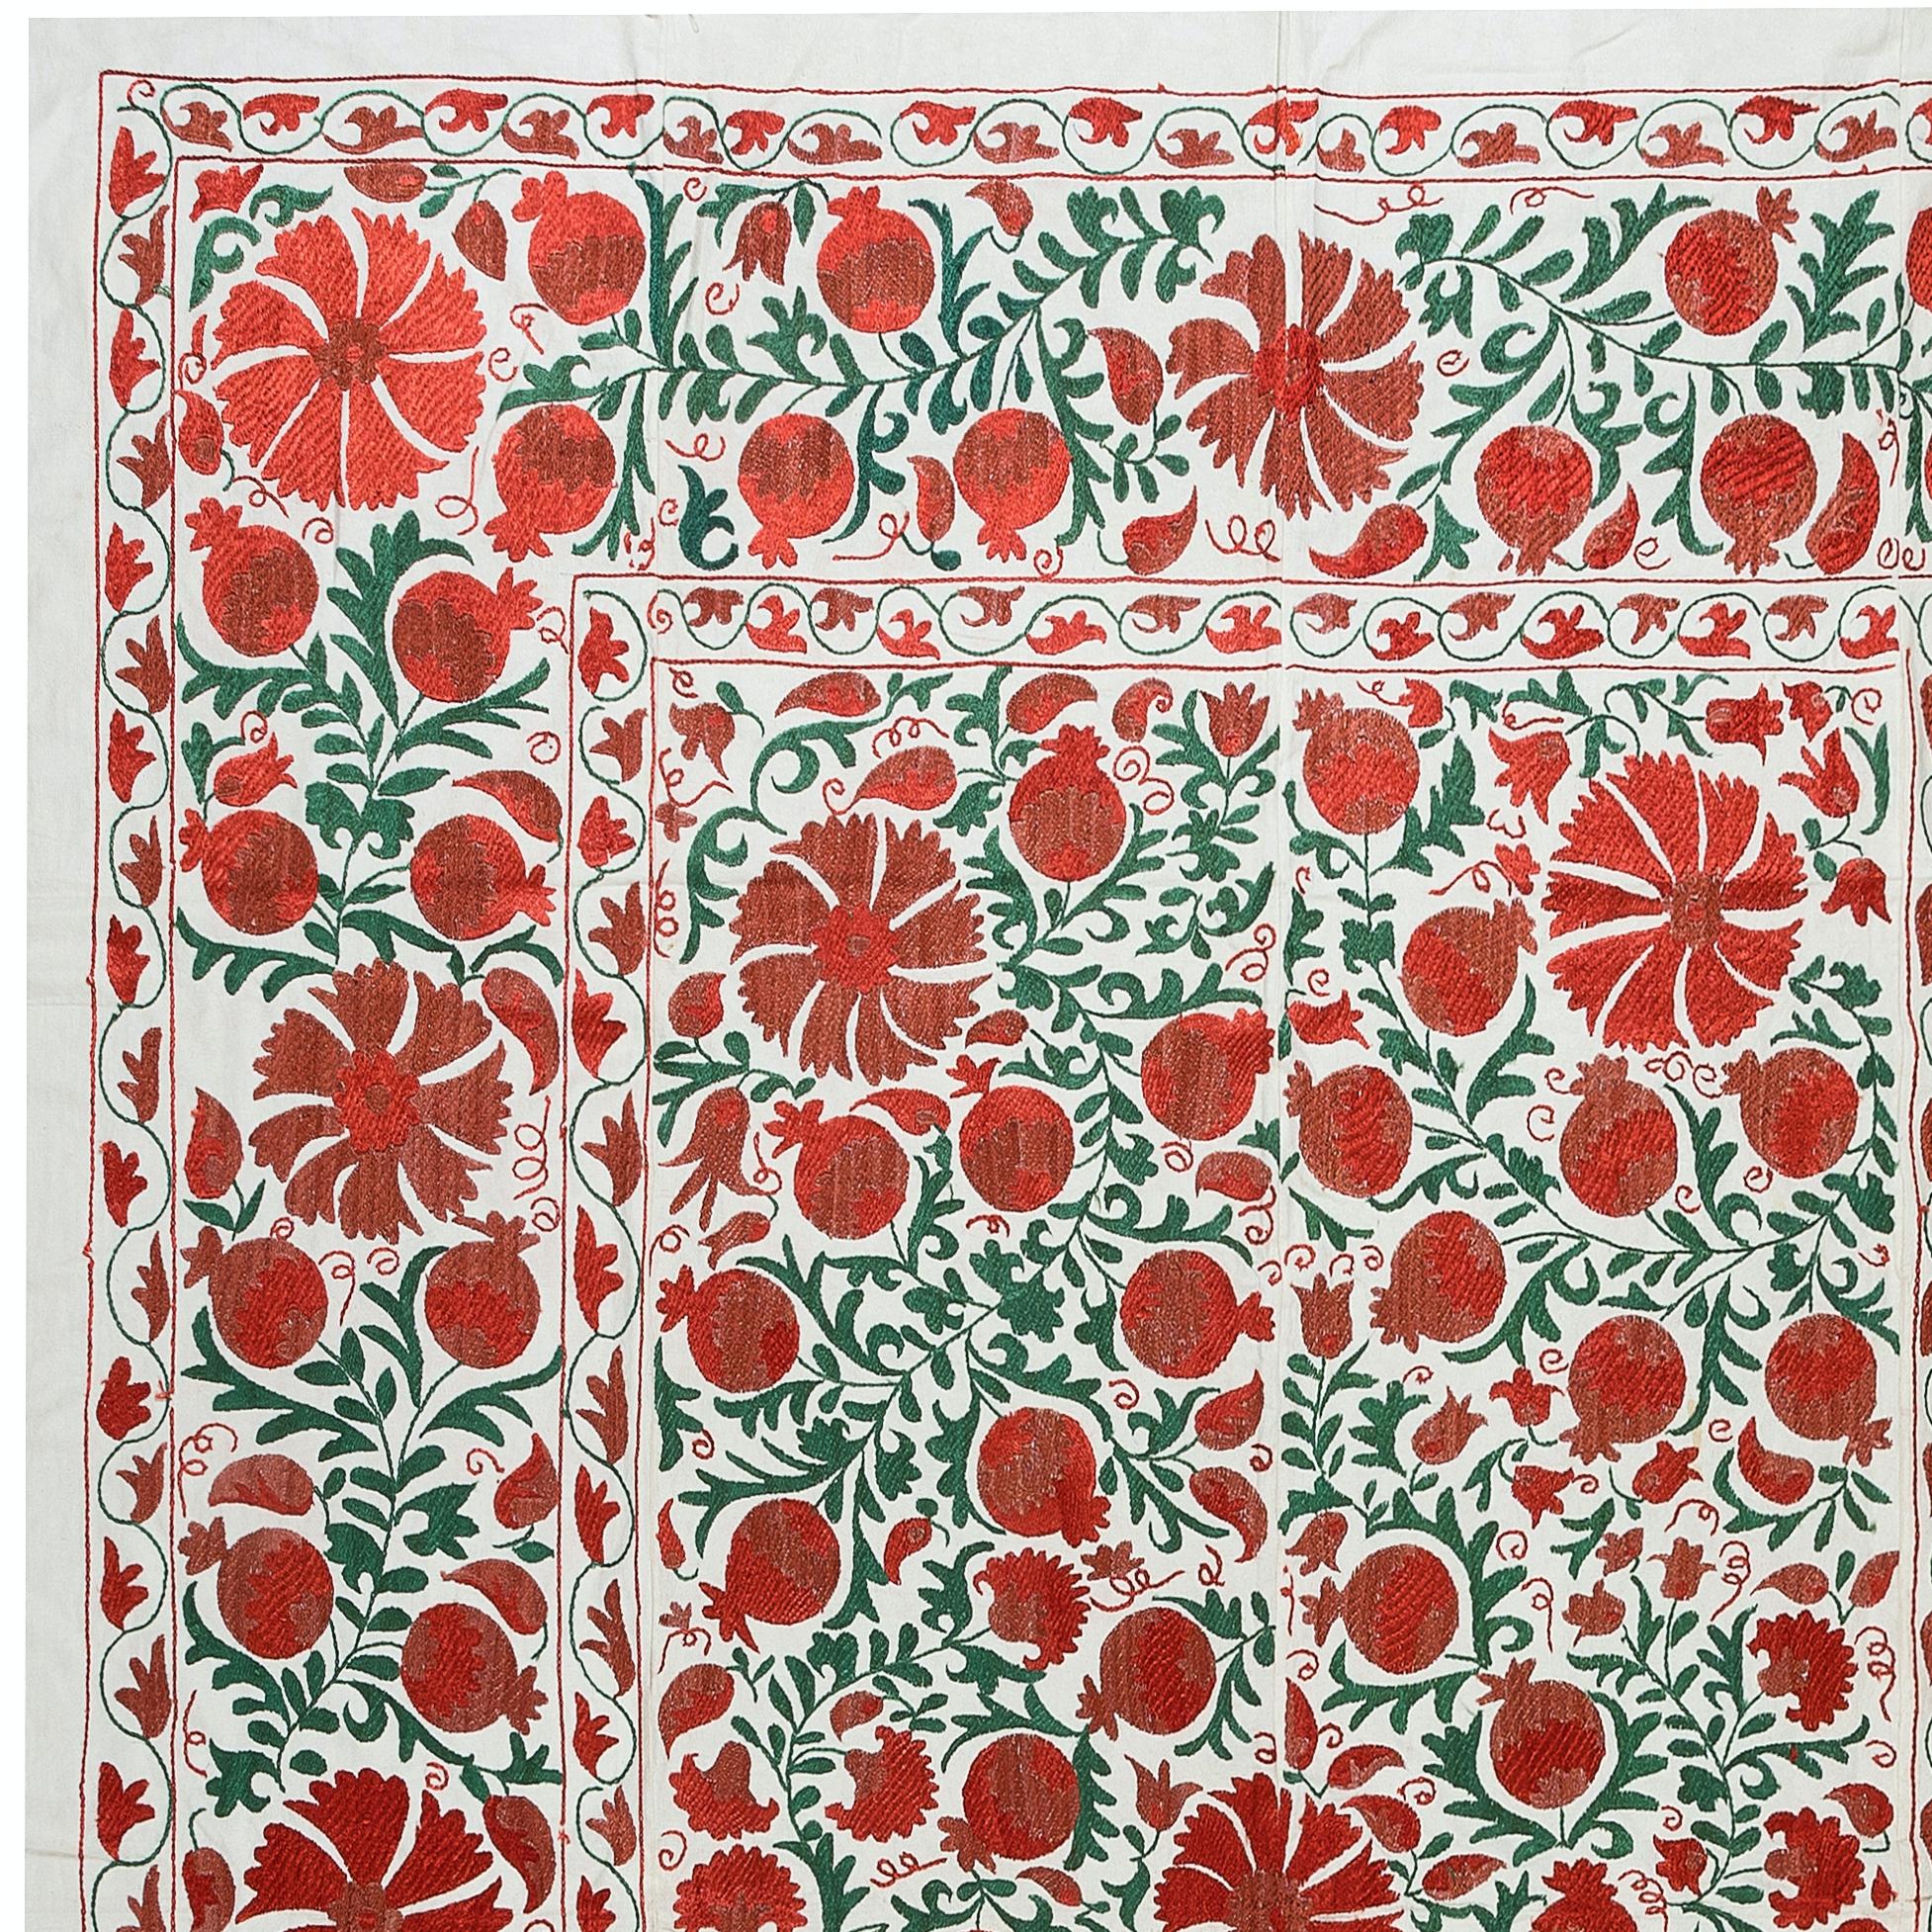 Suzani, ein zentralasiatischer Begriff für eine bestimmte Art von Handarbeit, ist auch der allgemeinere Name für die äußerst beliebten dekorativen Textilstücke, die diese Handarbeit in lebhaften Farben mit kühnen, ausdrucksstarken floralen und